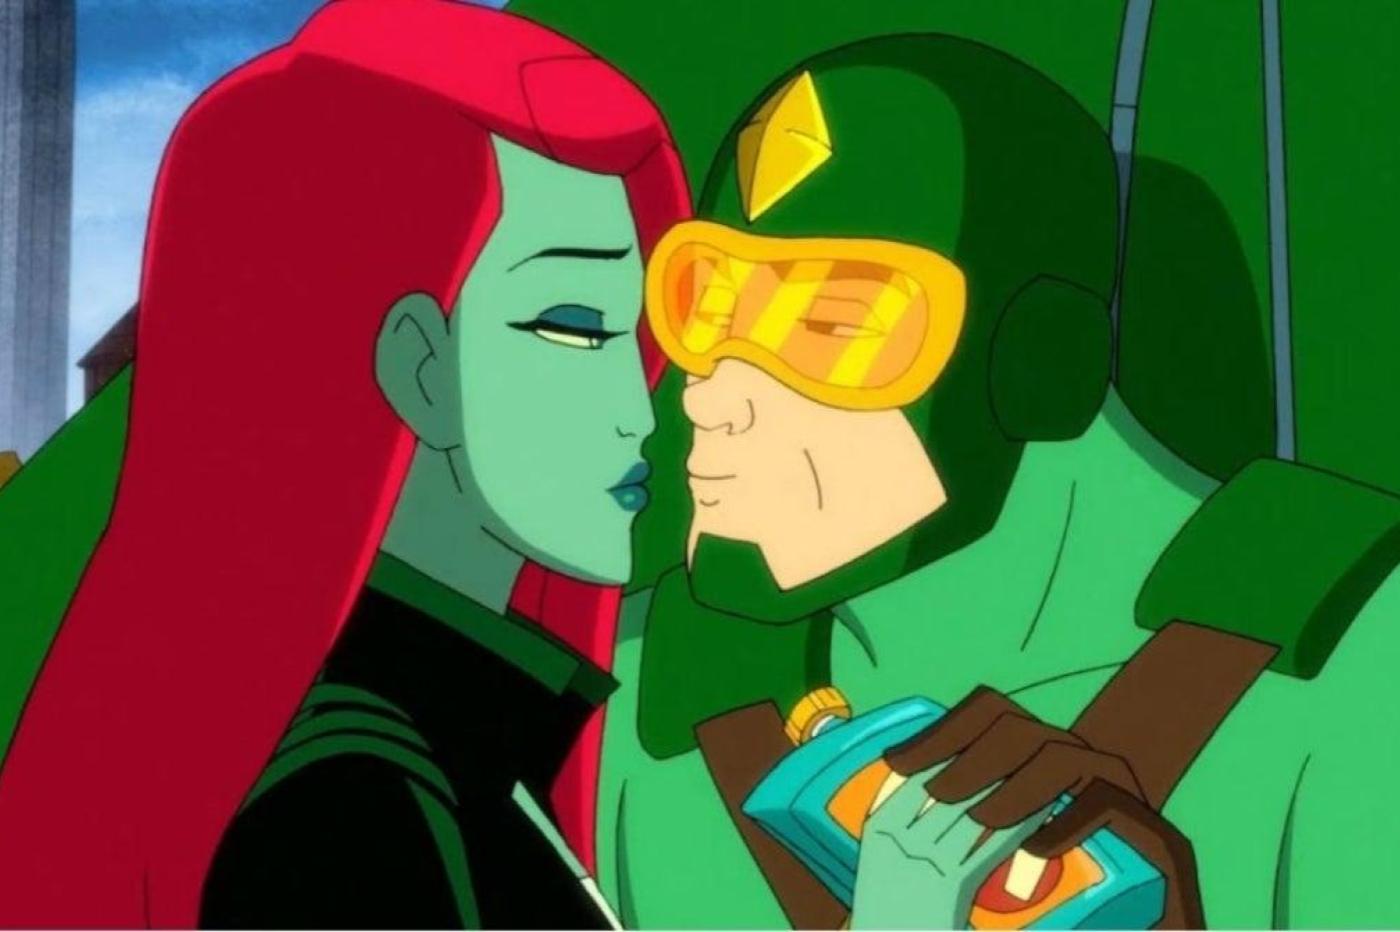 Capture d'écran de la série Harley Quinn ou Kite Man essayer d'embrasser Poison Ivy